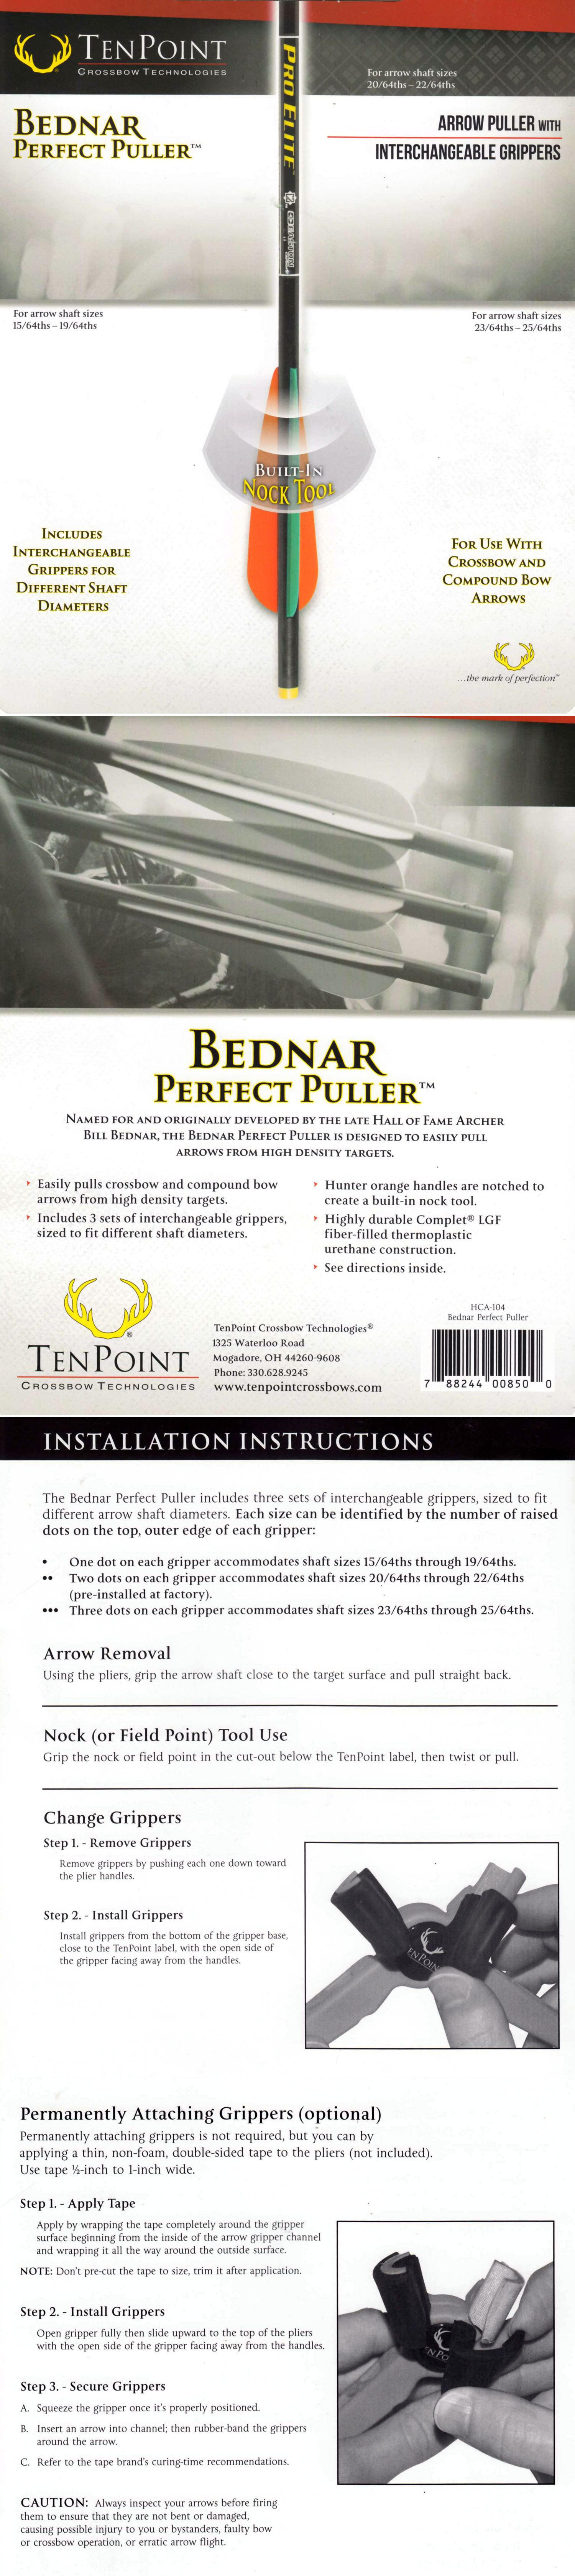 TenPoint Bednar Perfect Pfeilzieher - Bogensportartikel kaufen - Onlineshop  - Ladengeschäft